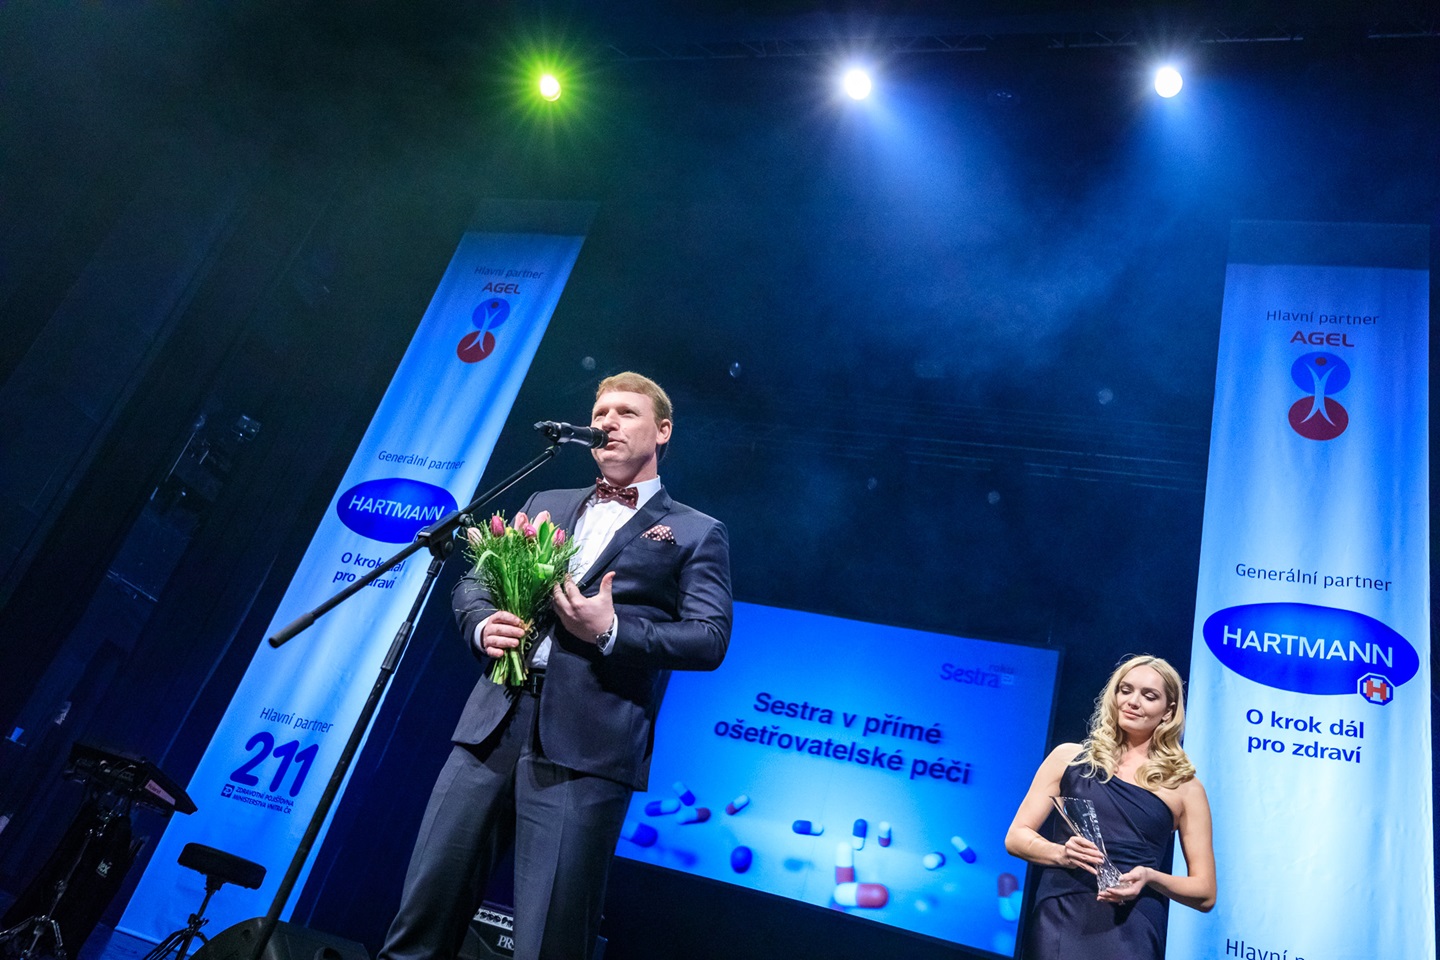 U mikrofonu Tomáš Groh, Managing Director HARTMANN-RICO a Taťána Gregor Brzobohatá vyhlašují na pódiu divadla Hybernia vítězku kategorie Sestra v přímé ošetřovatelské péči